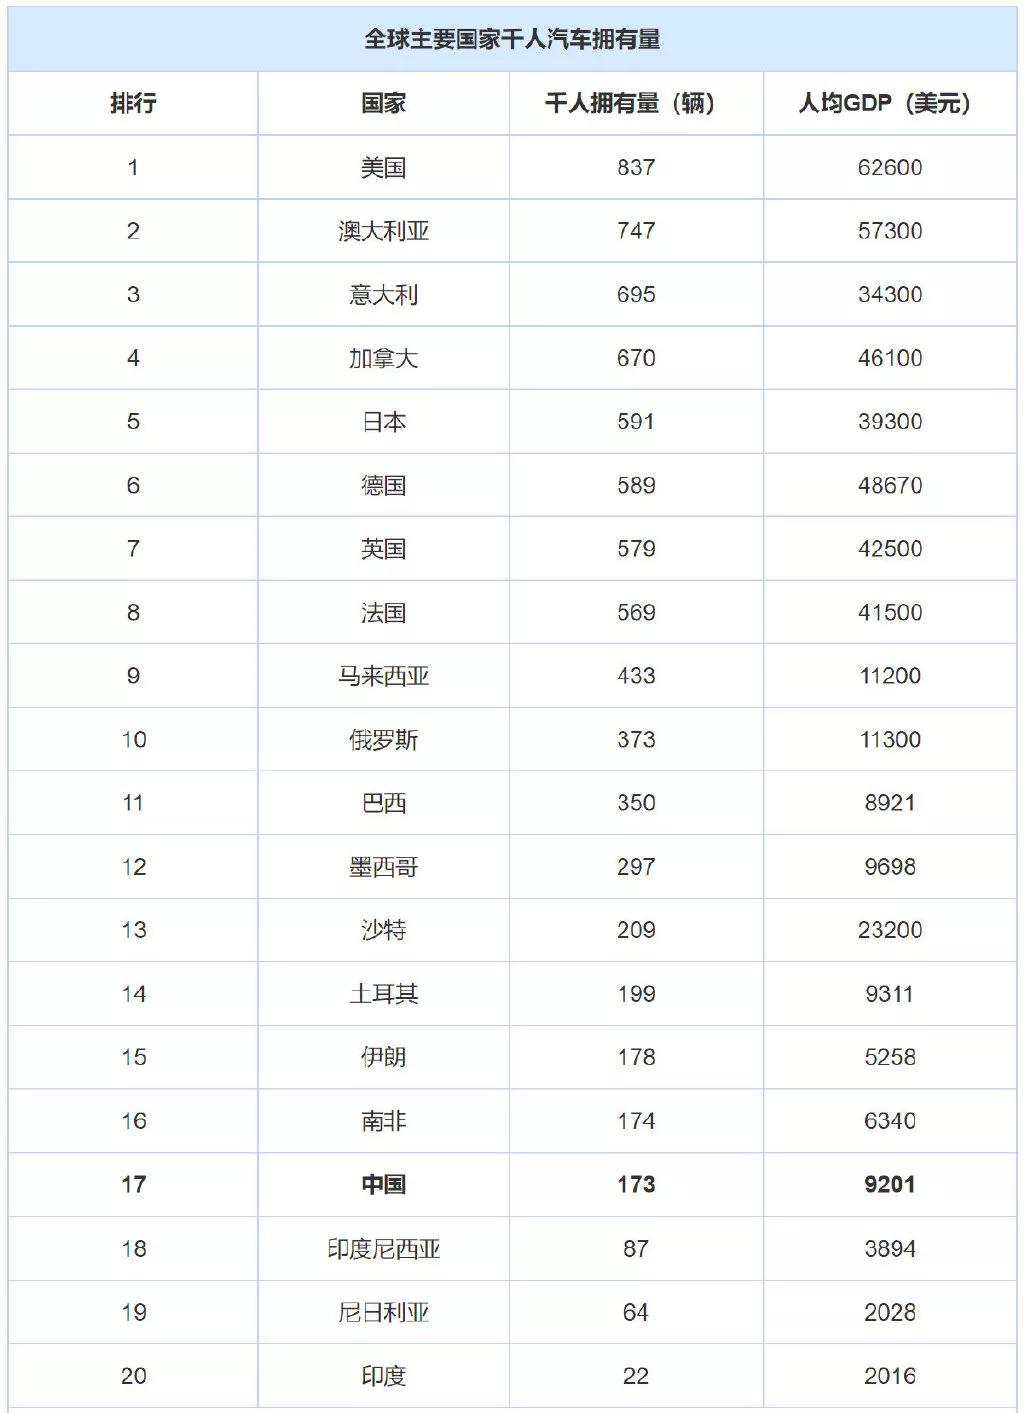 最新统计中国千人汽车拥有量仅为173辆-XI全网